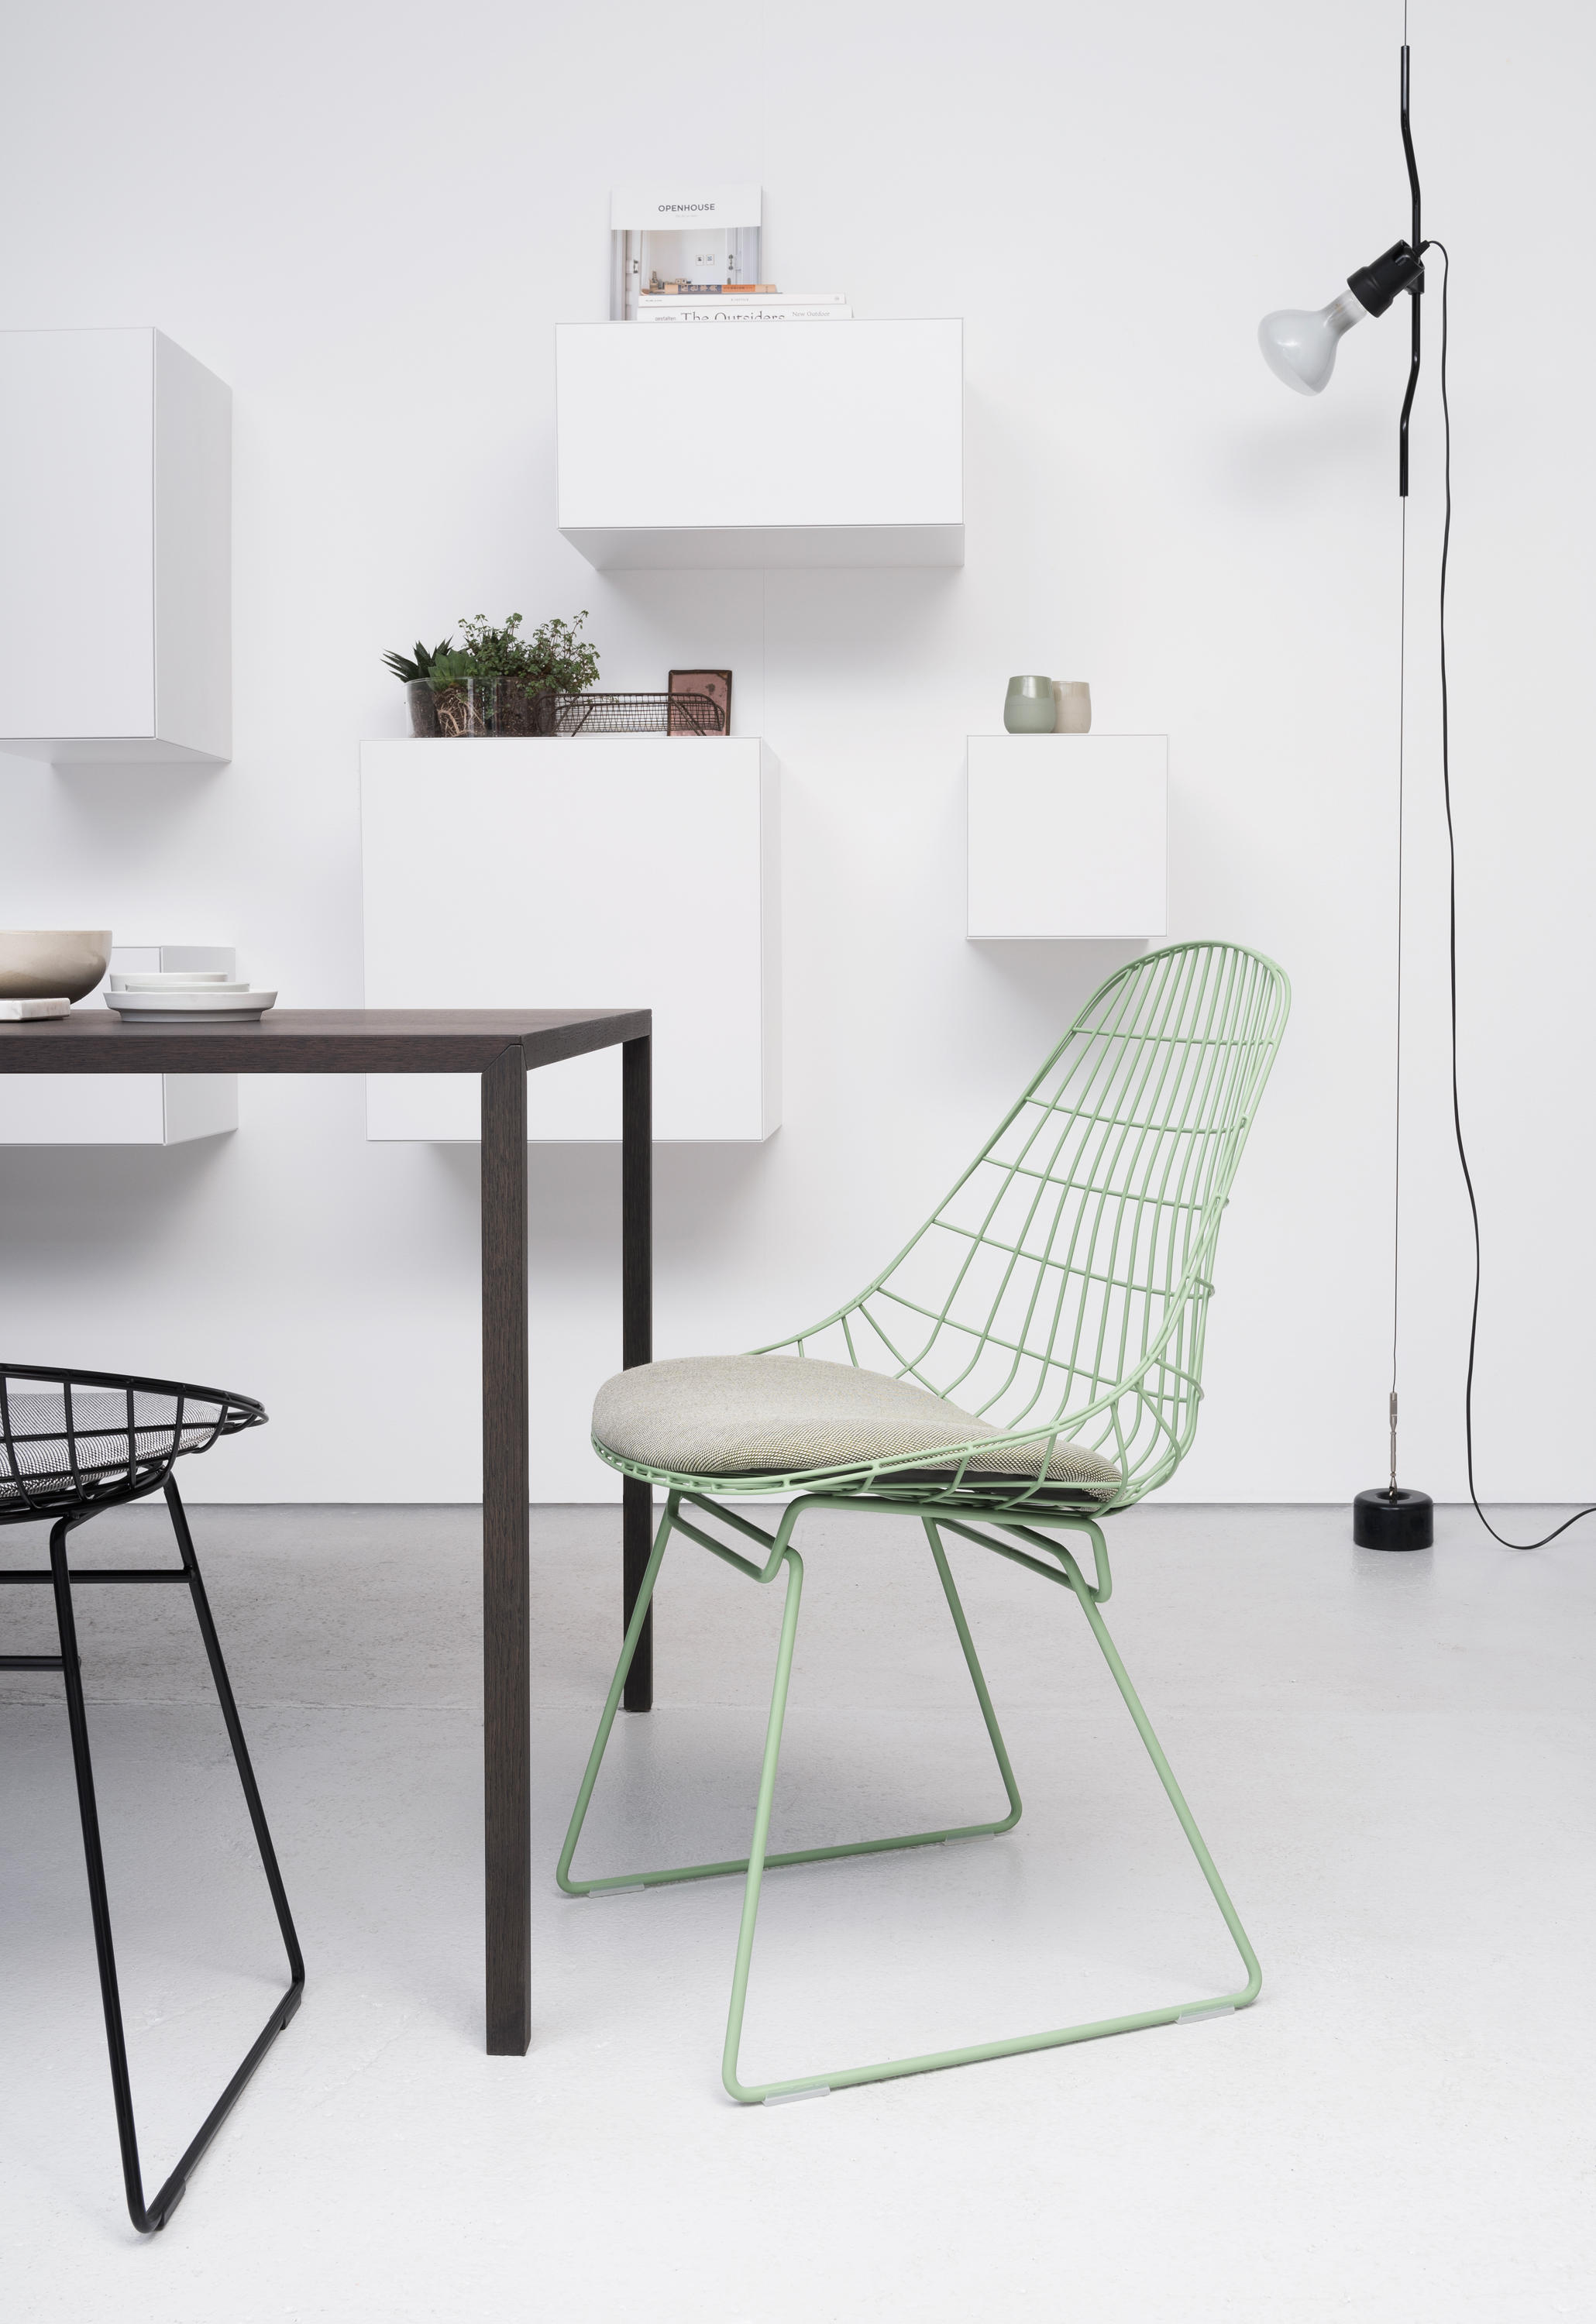 Gelijkwaardig Met andere bands Voel me slecht Wire chair SM05 & designer furniture | Architonic